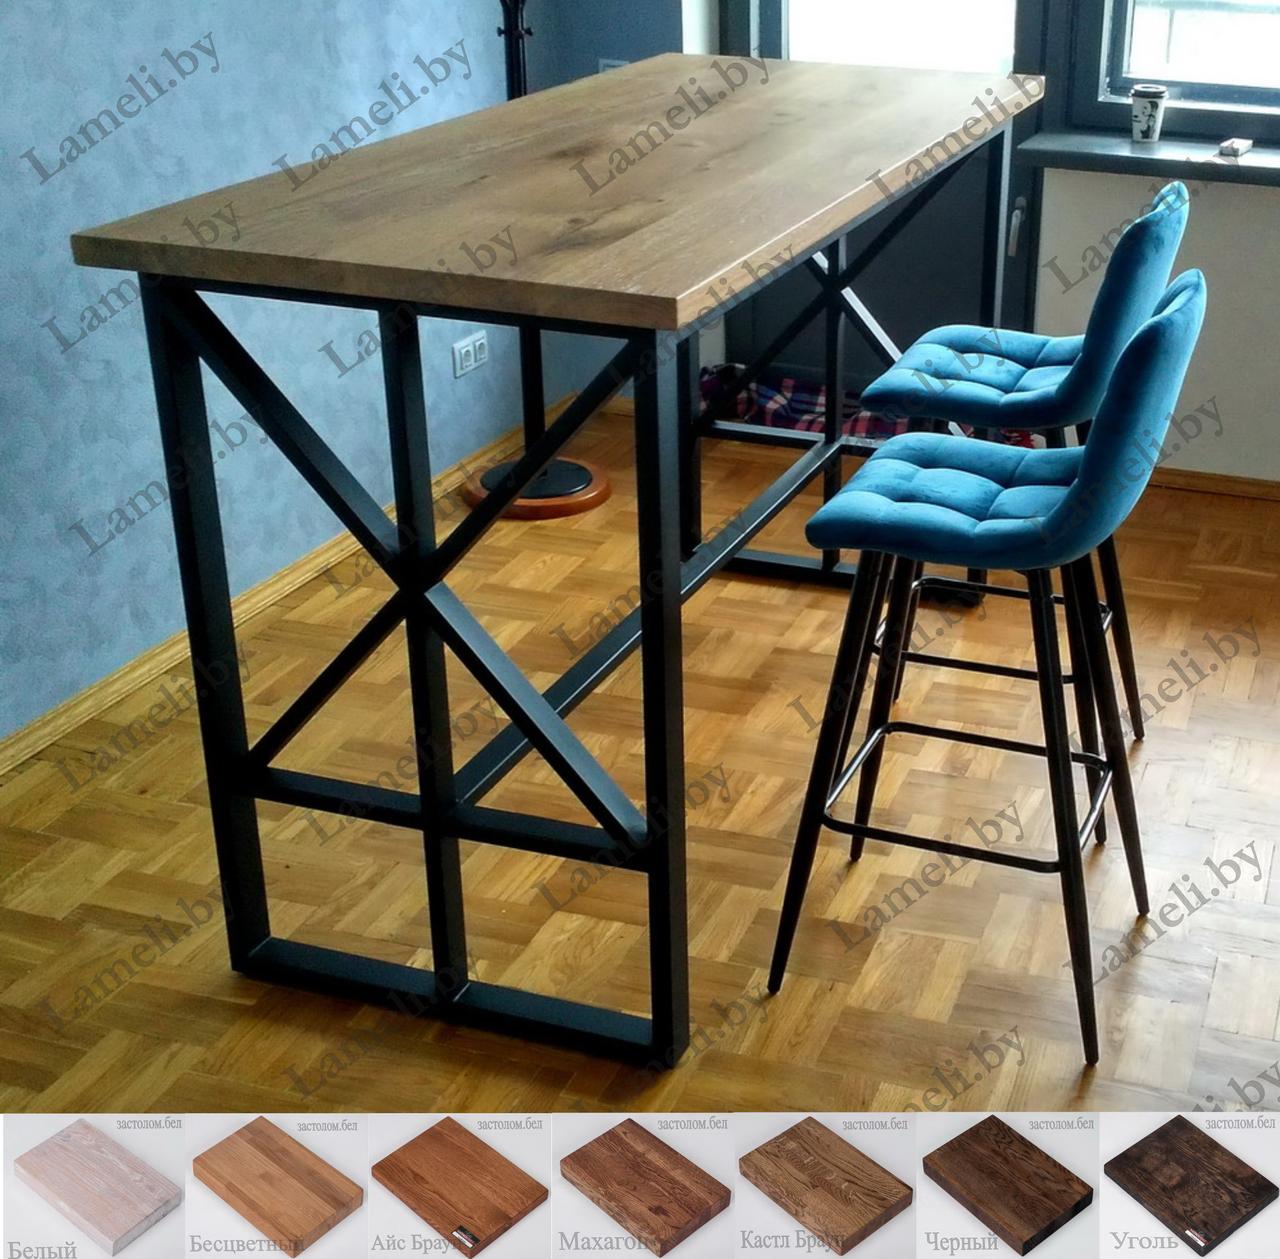 Барный стол на цельносварном подстолье серии Ж из массива ДУБА, ЛДСП или постформинга. Цвет и размеры на выбор